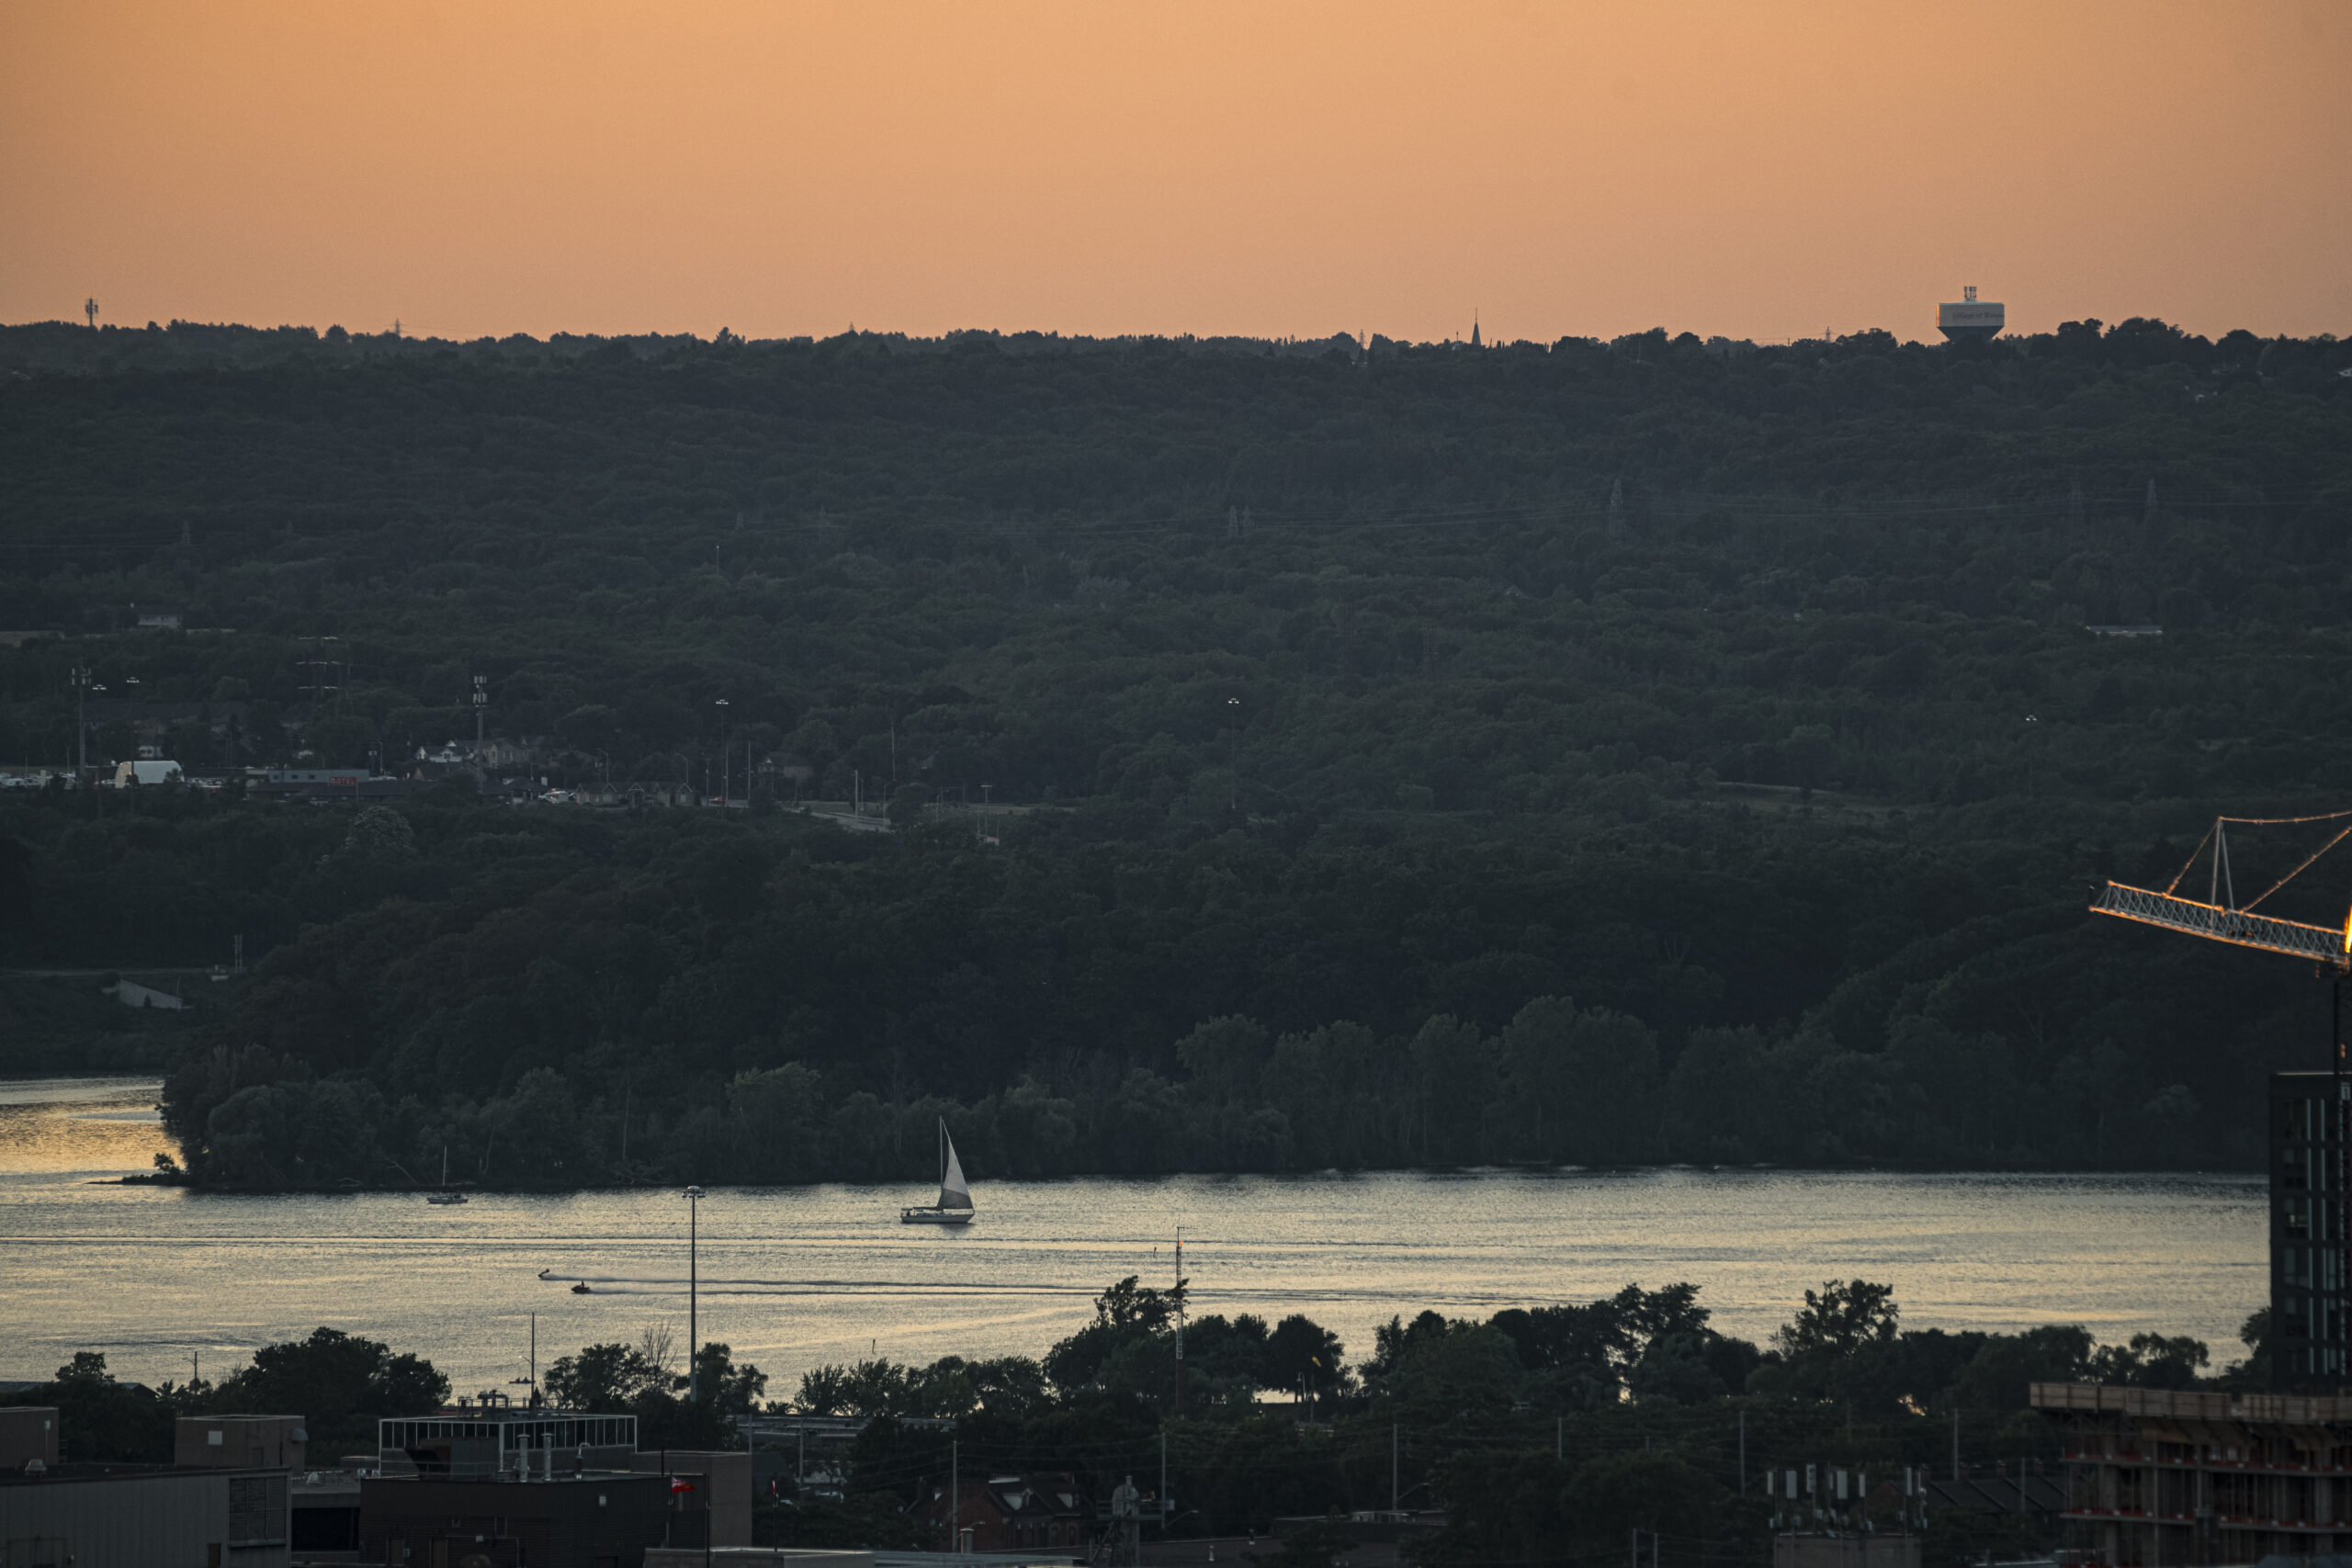 The Niagara escarpment as seen from Hamilton, Ont.